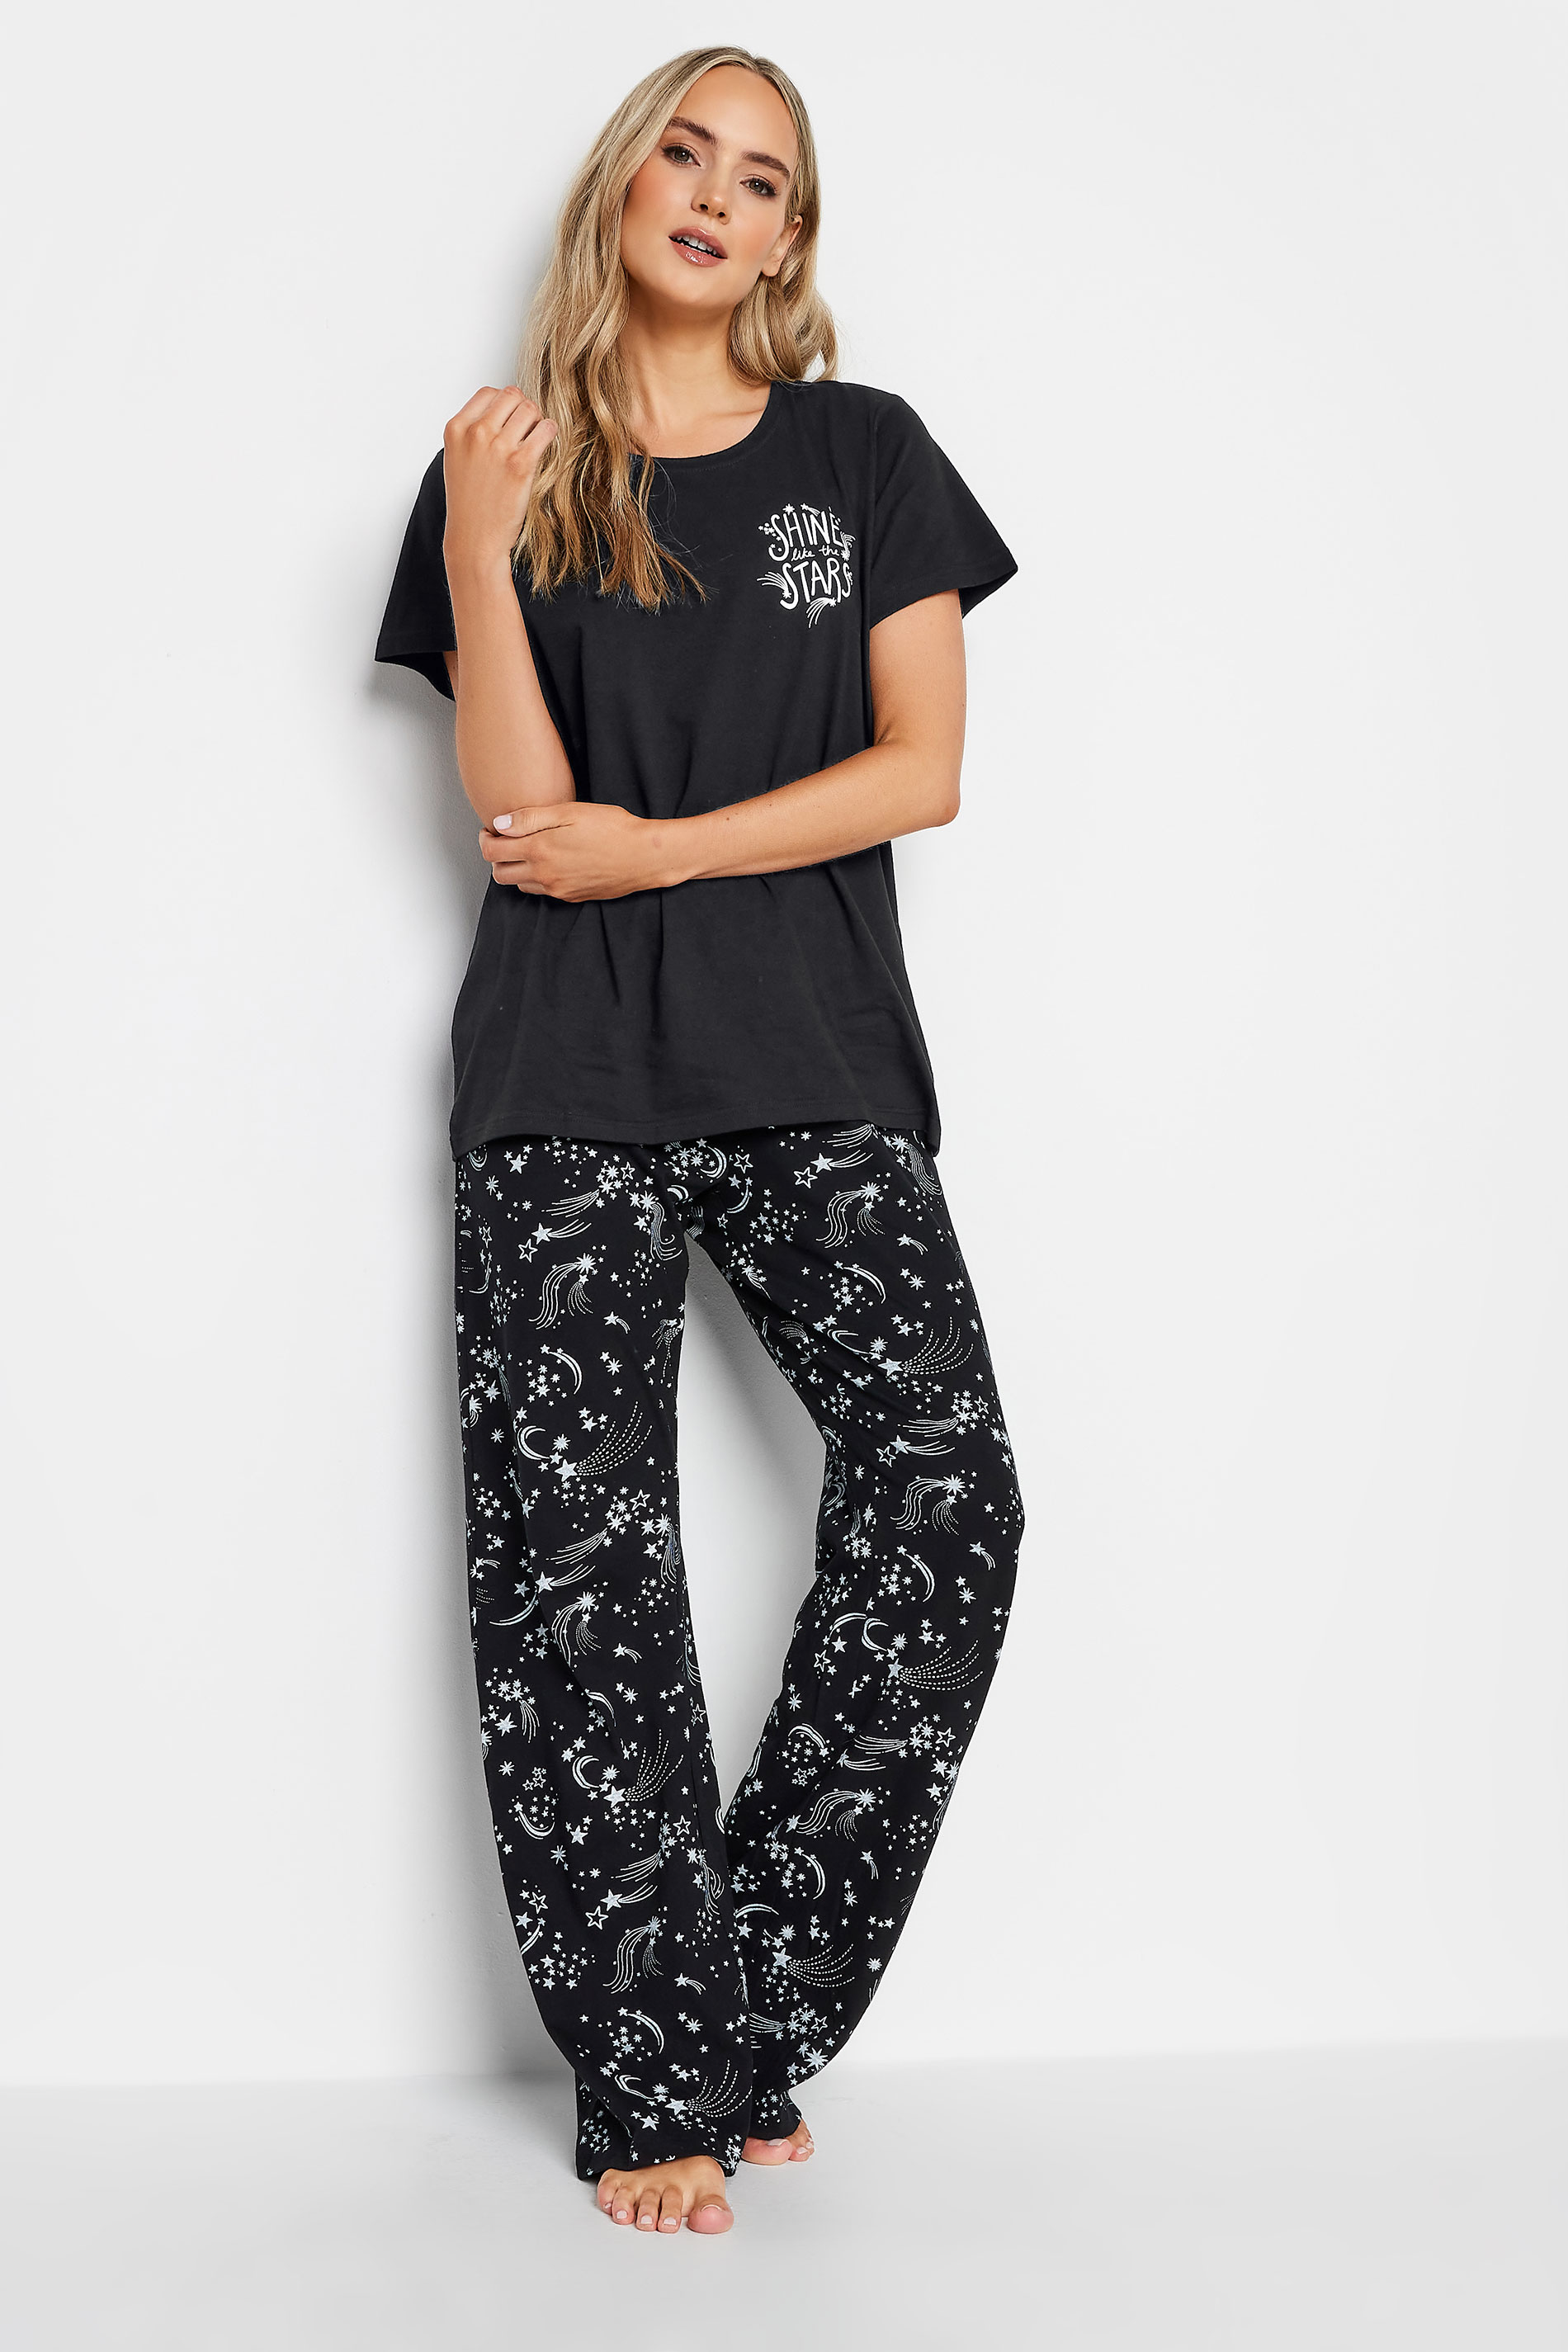 LTS Tall Black Star Print Pyjama Set | Long Tall Sally  2